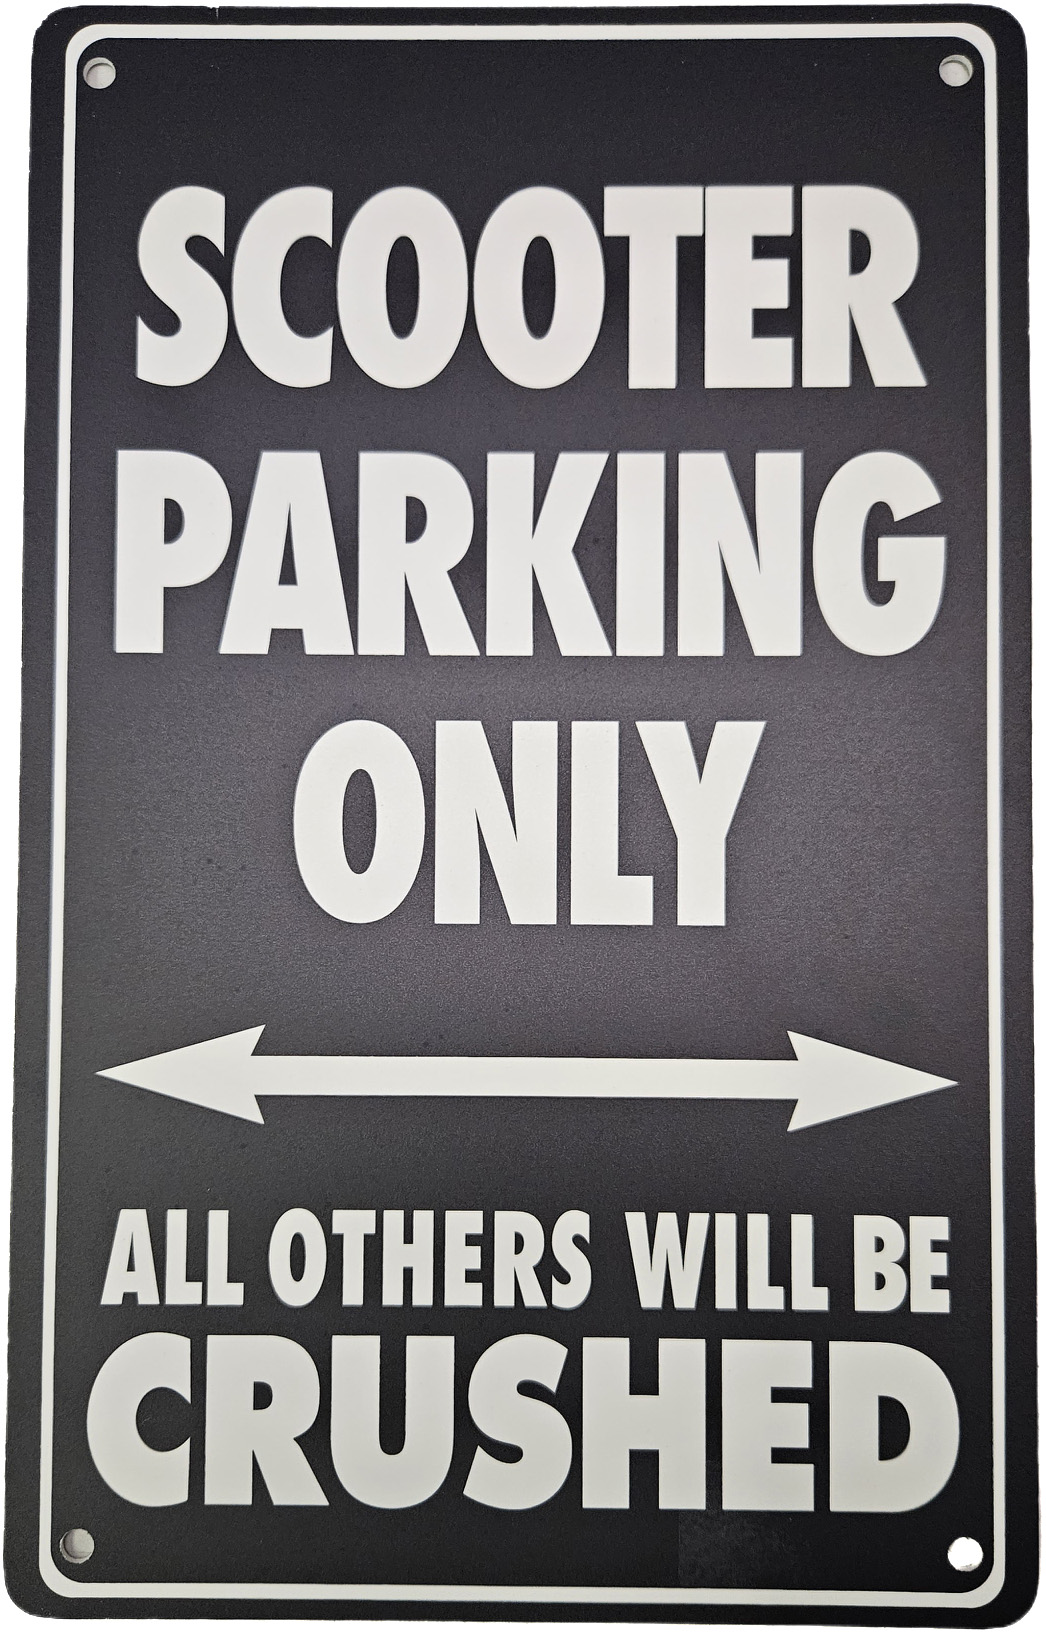 Schild "Scooter parking only", aus wetterfestem PVC, 40x25cm